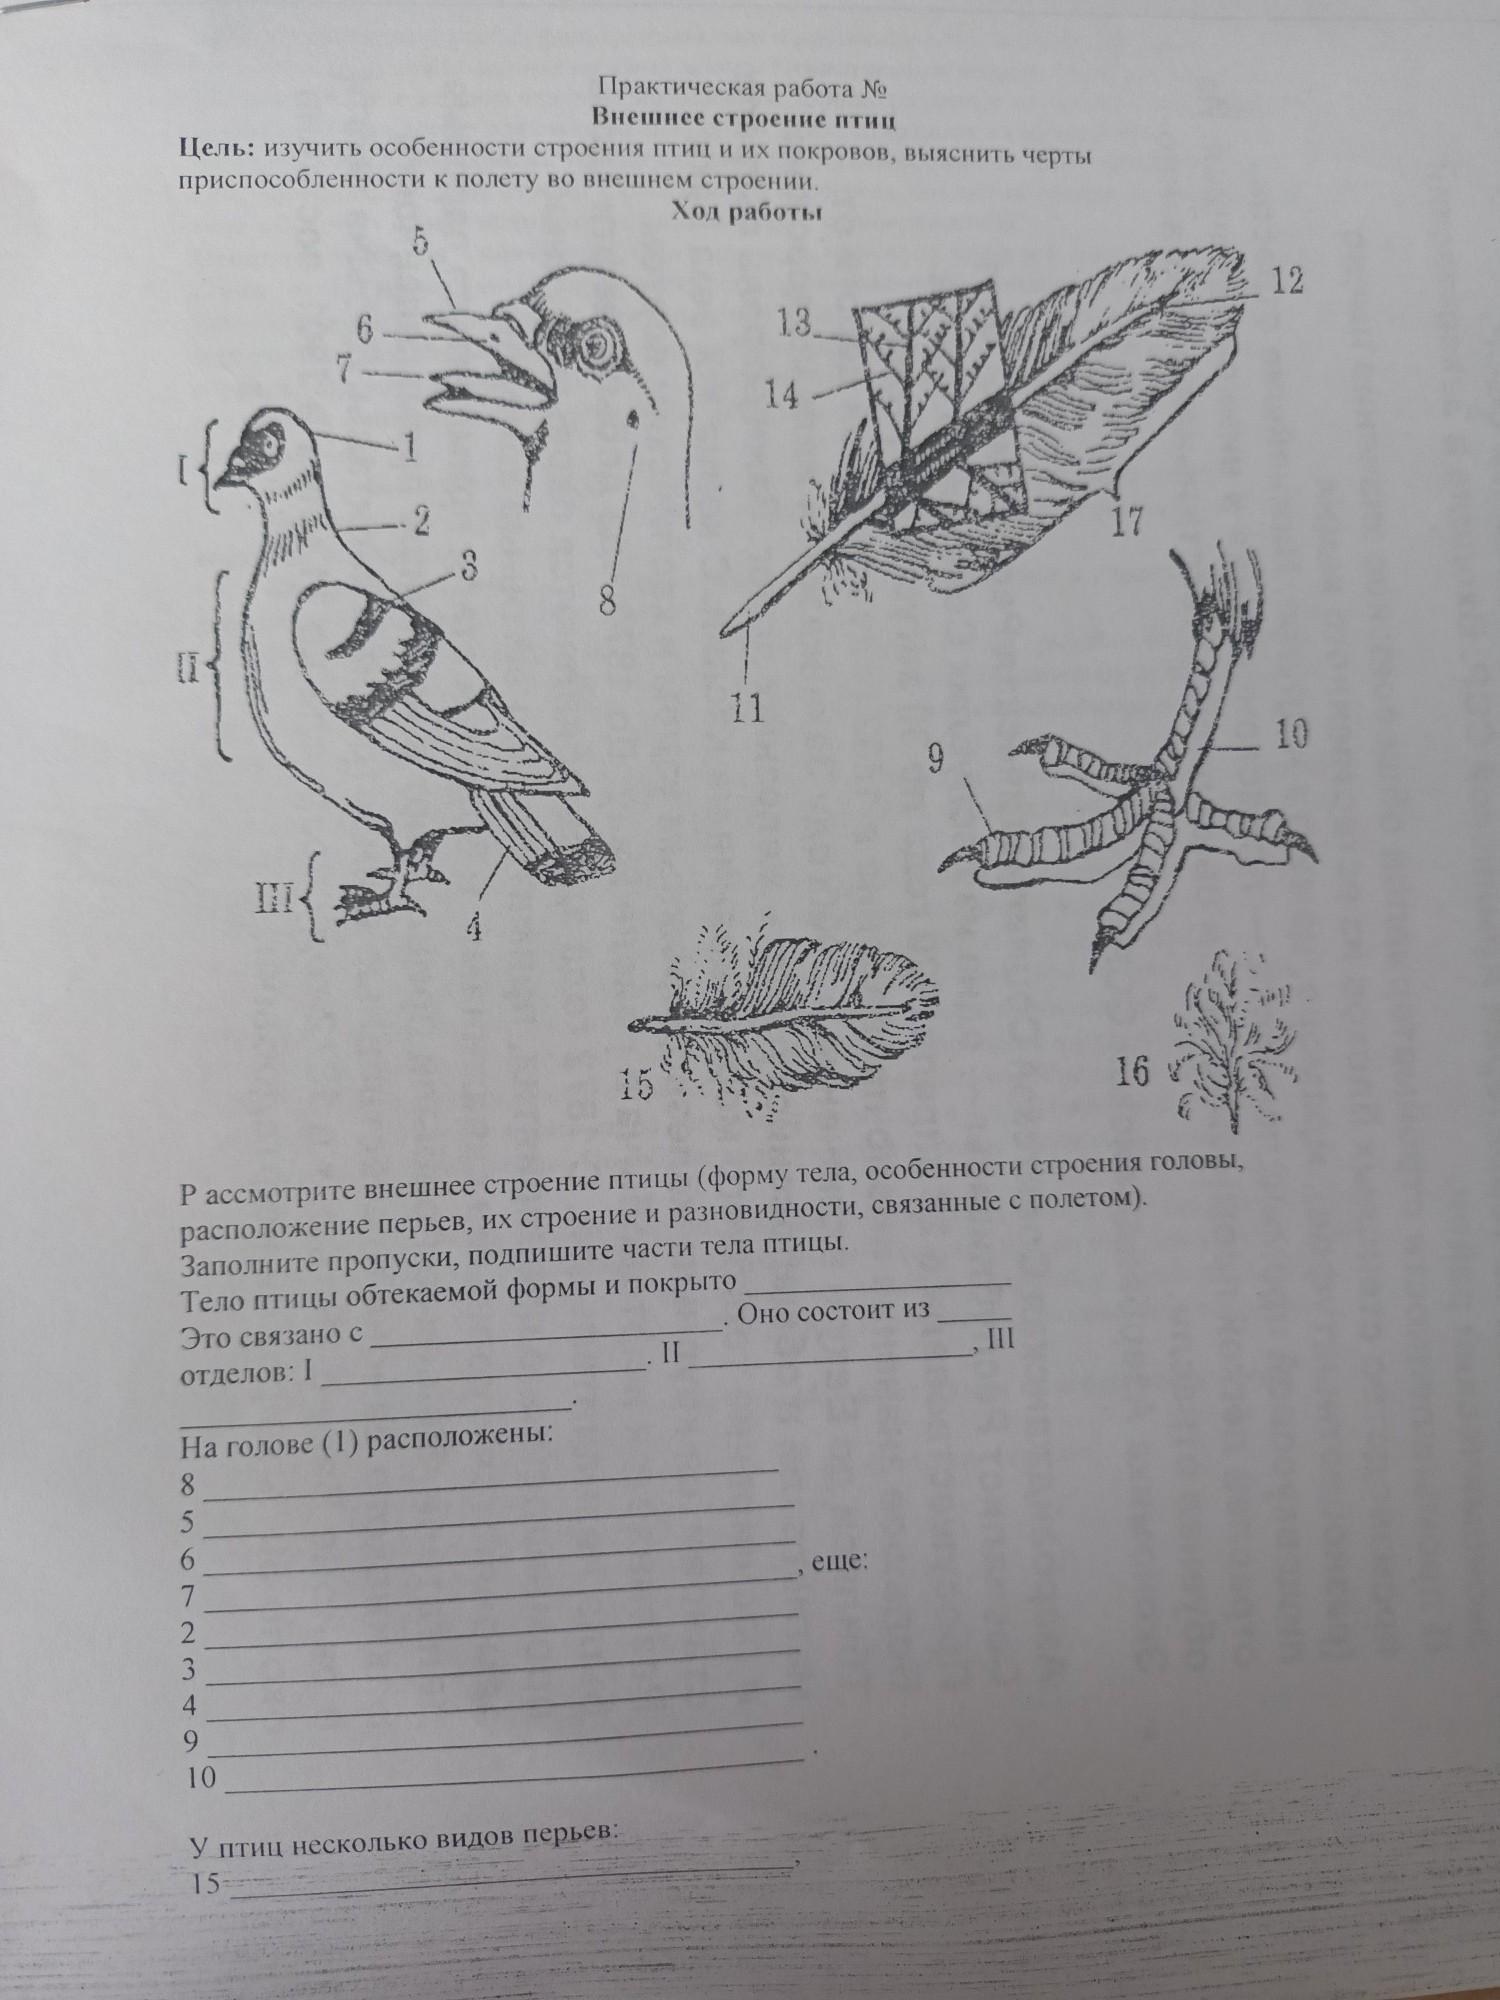 Особенности строения птиц черты приспособленности к полету